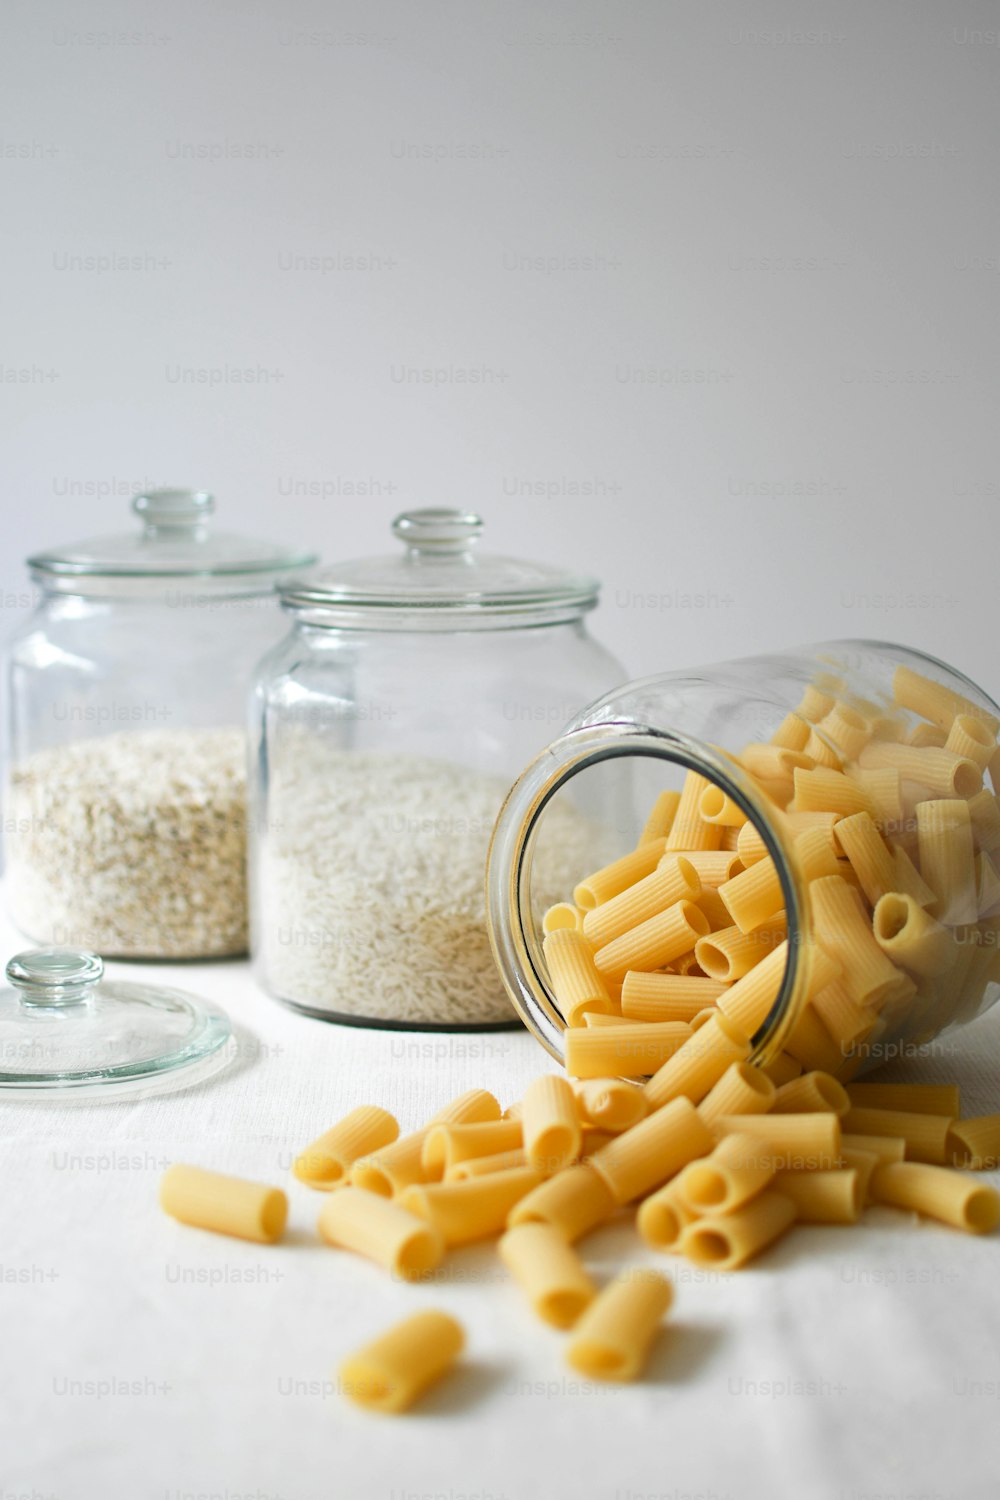 Les macaronis au fromage sont renversés d’un bocal